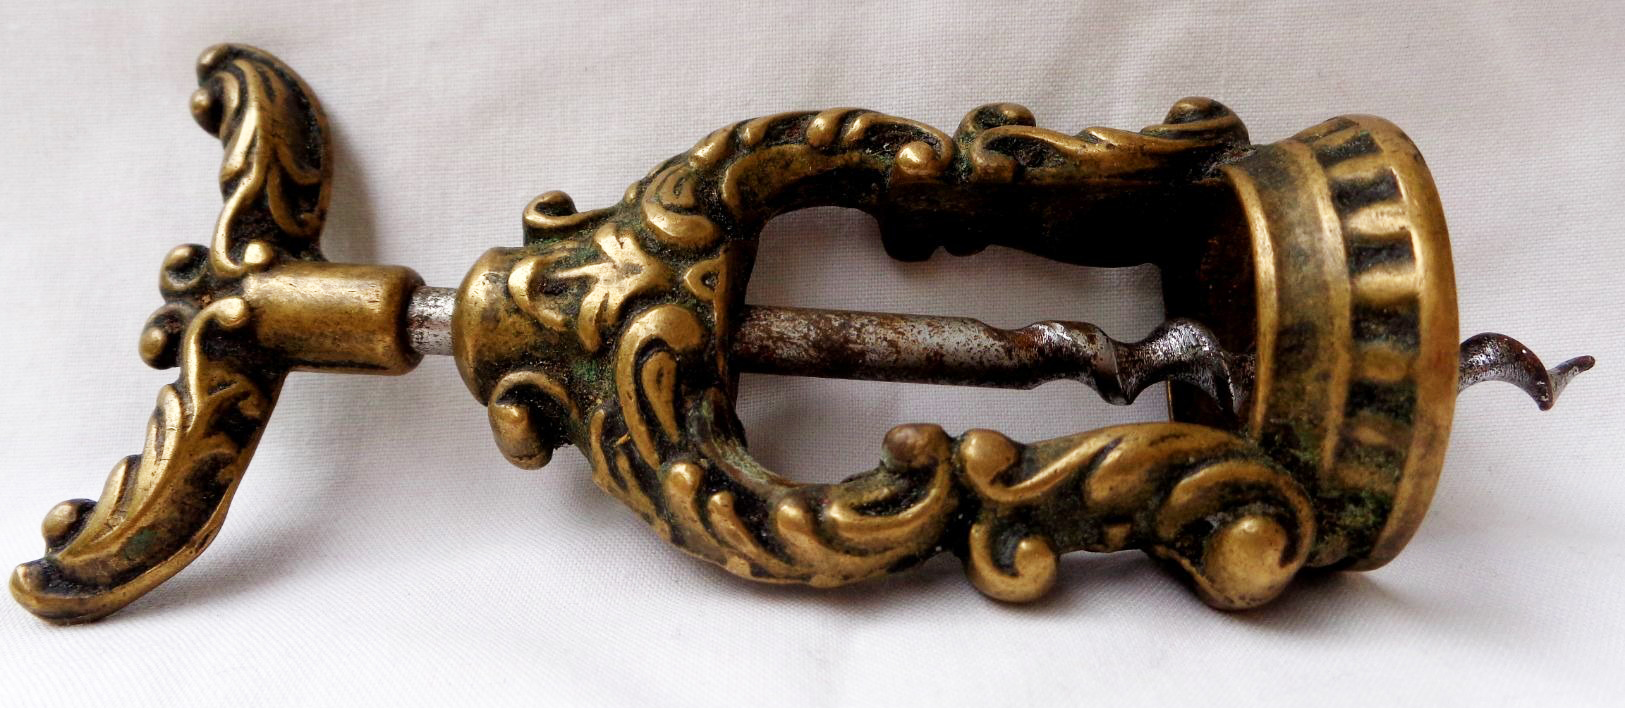 Tire-bouchon ancien - Fanelli curiosités - objets d'art haute époque